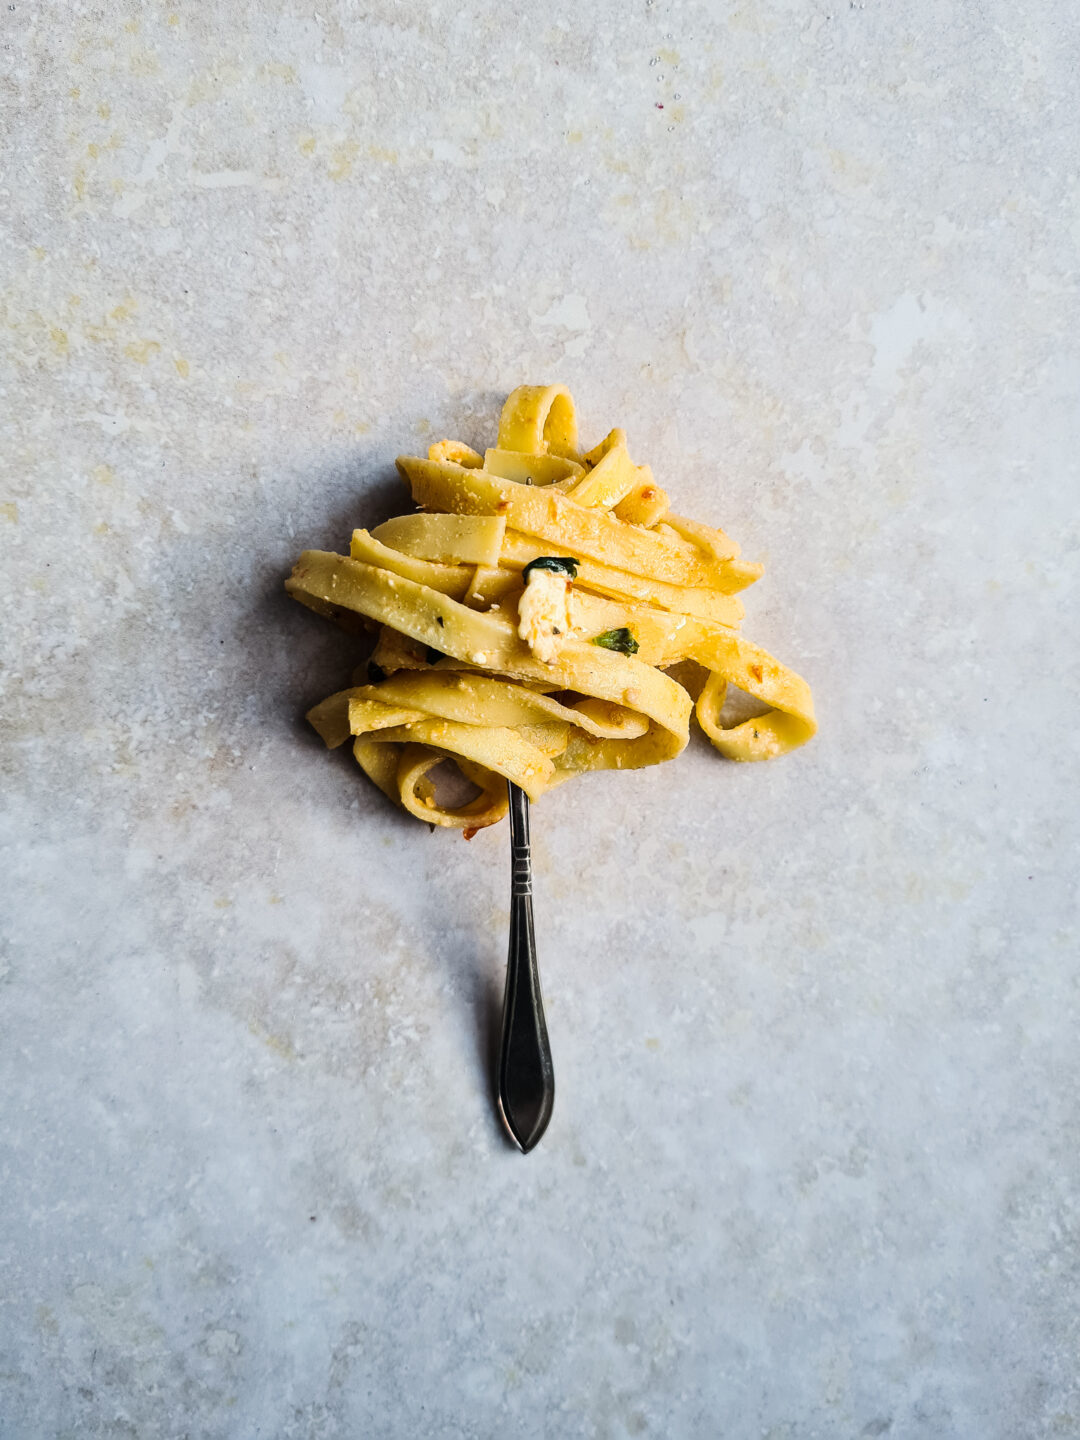 Fettuccine Alfredo; romig, goddelijk en met kaas